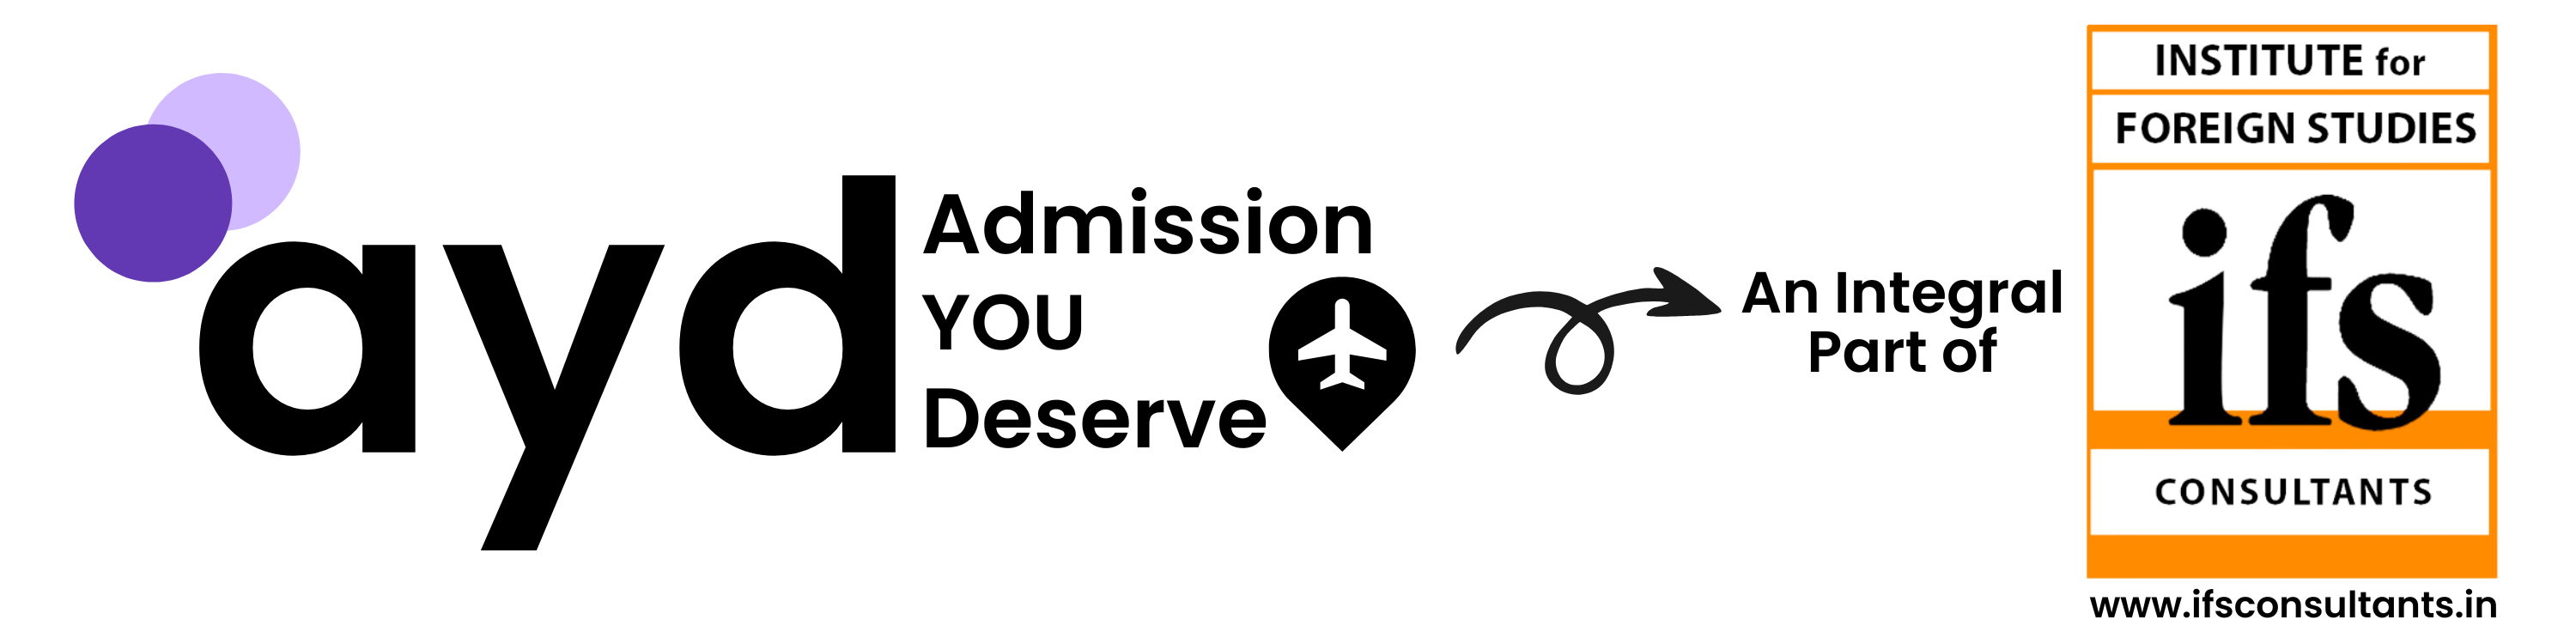 Admission You Deserve